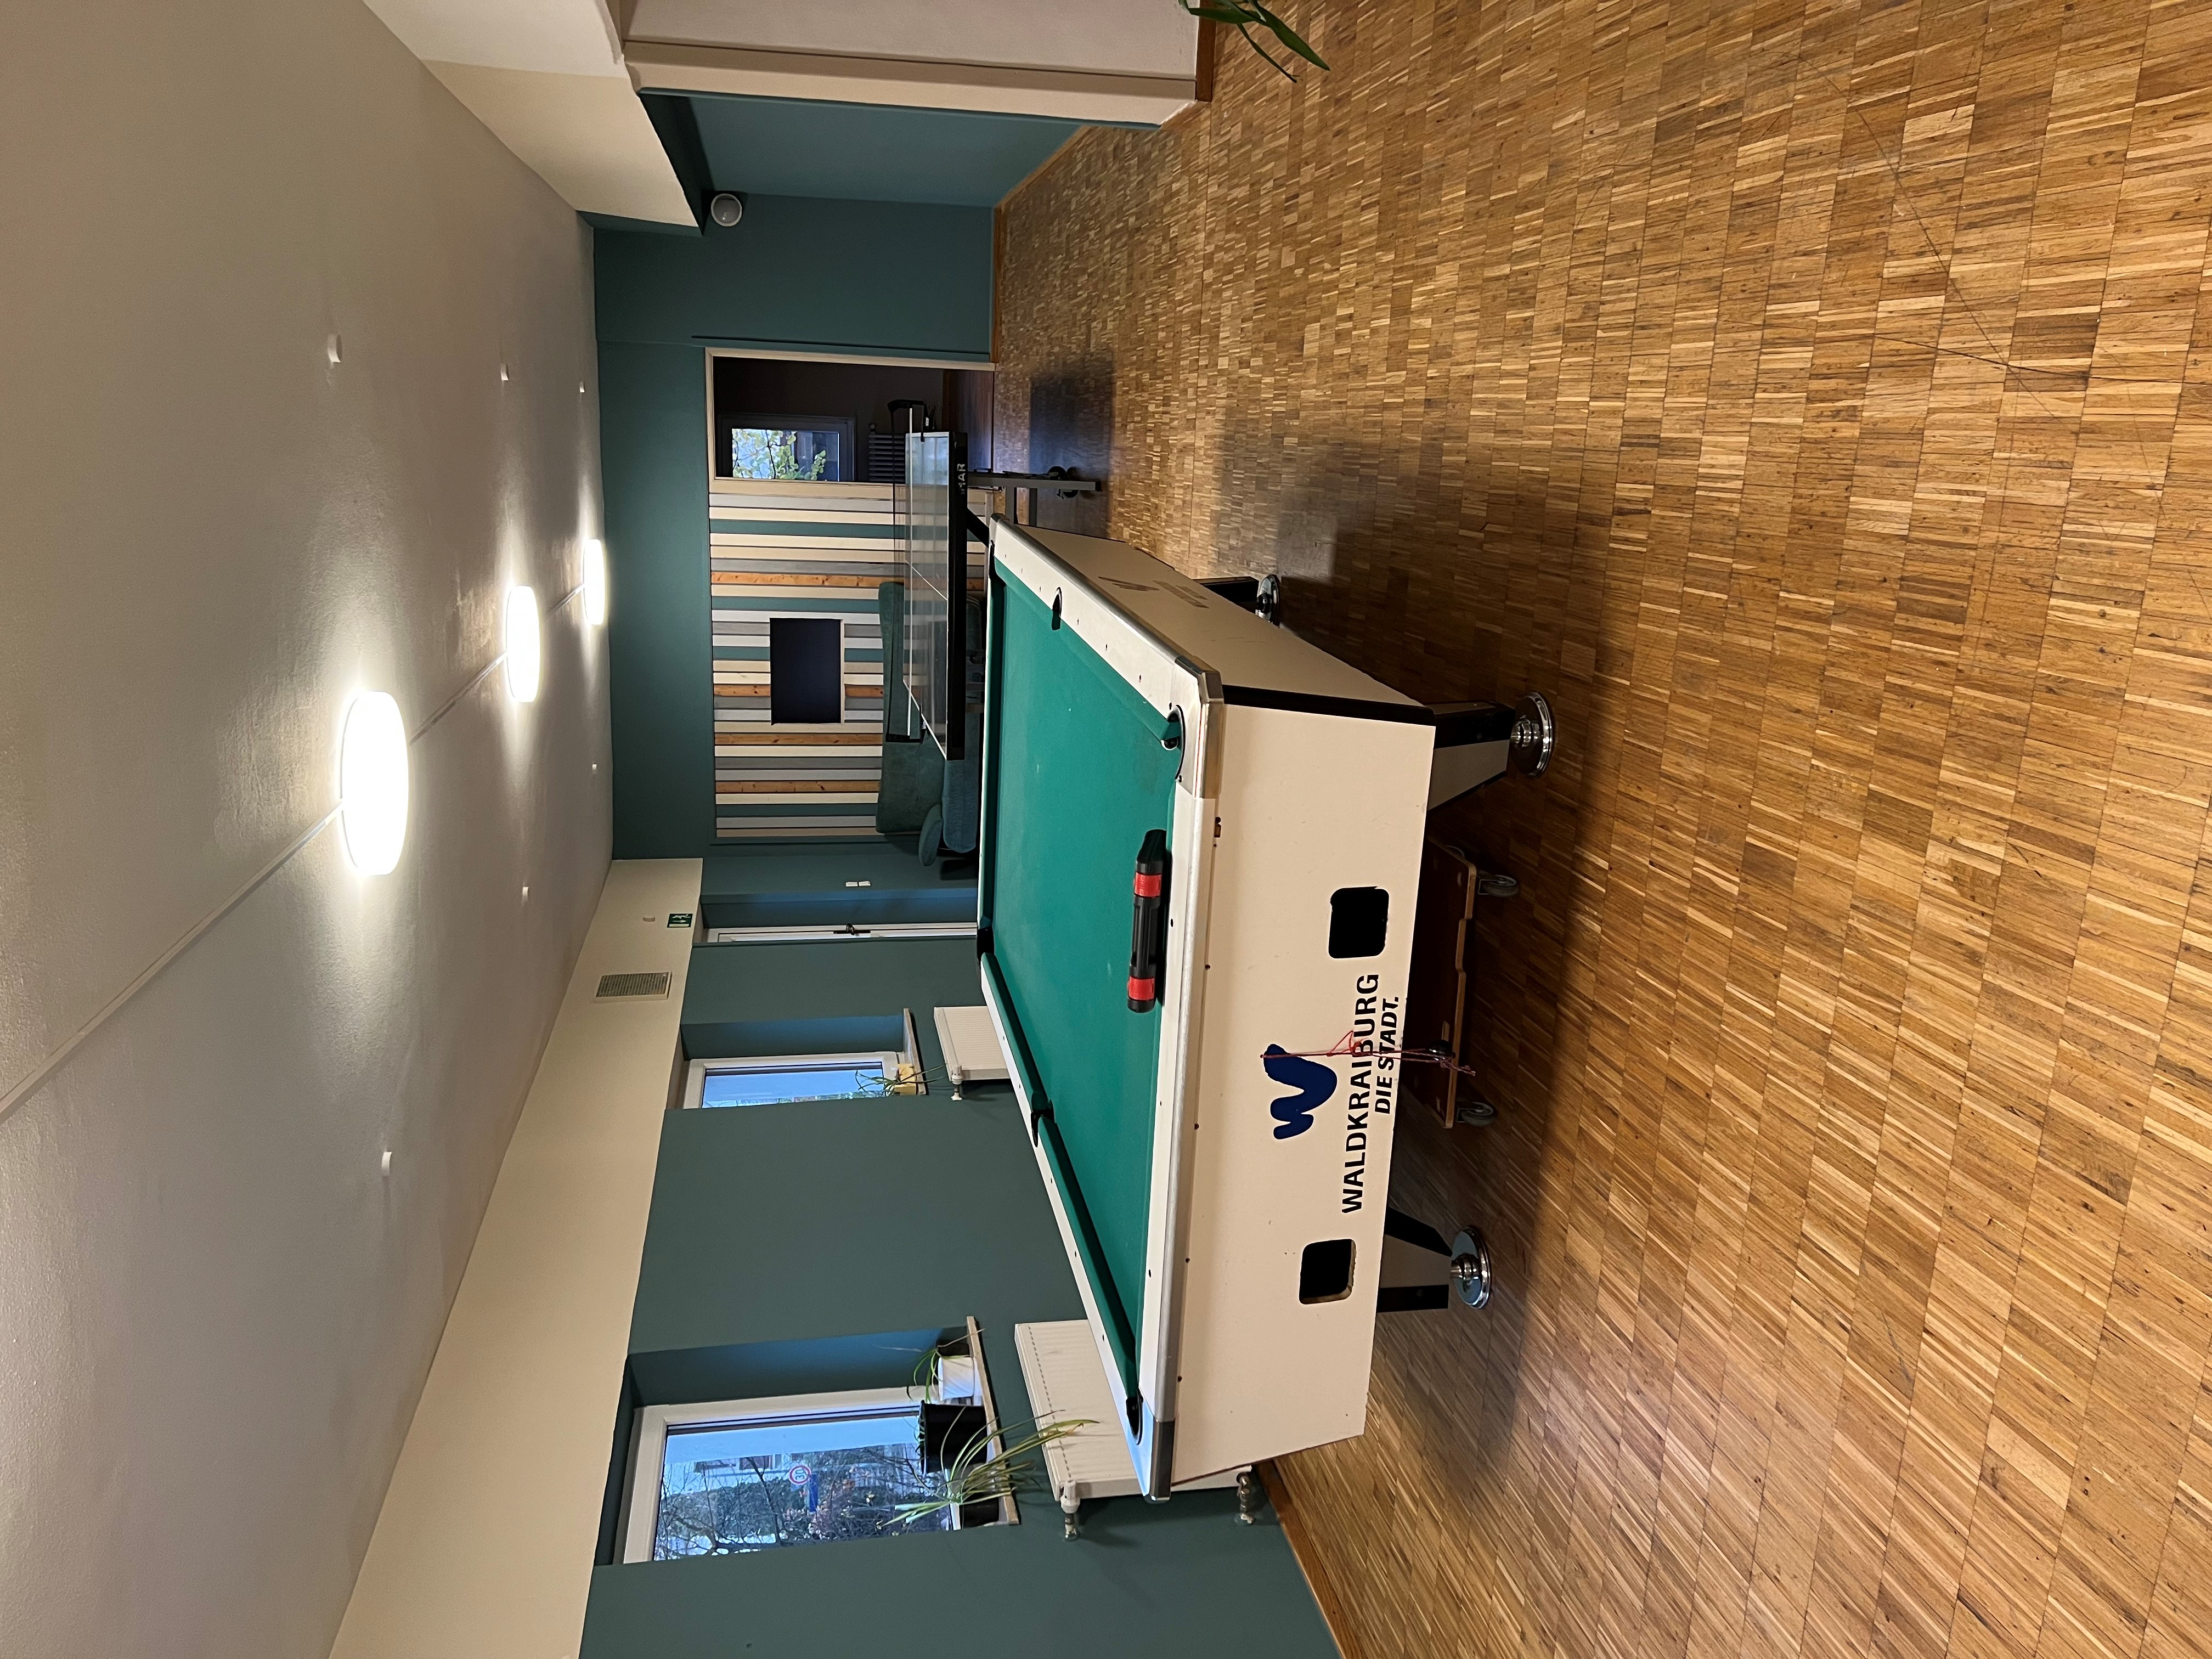 Ein Billiardtisch im Haus der Jugend